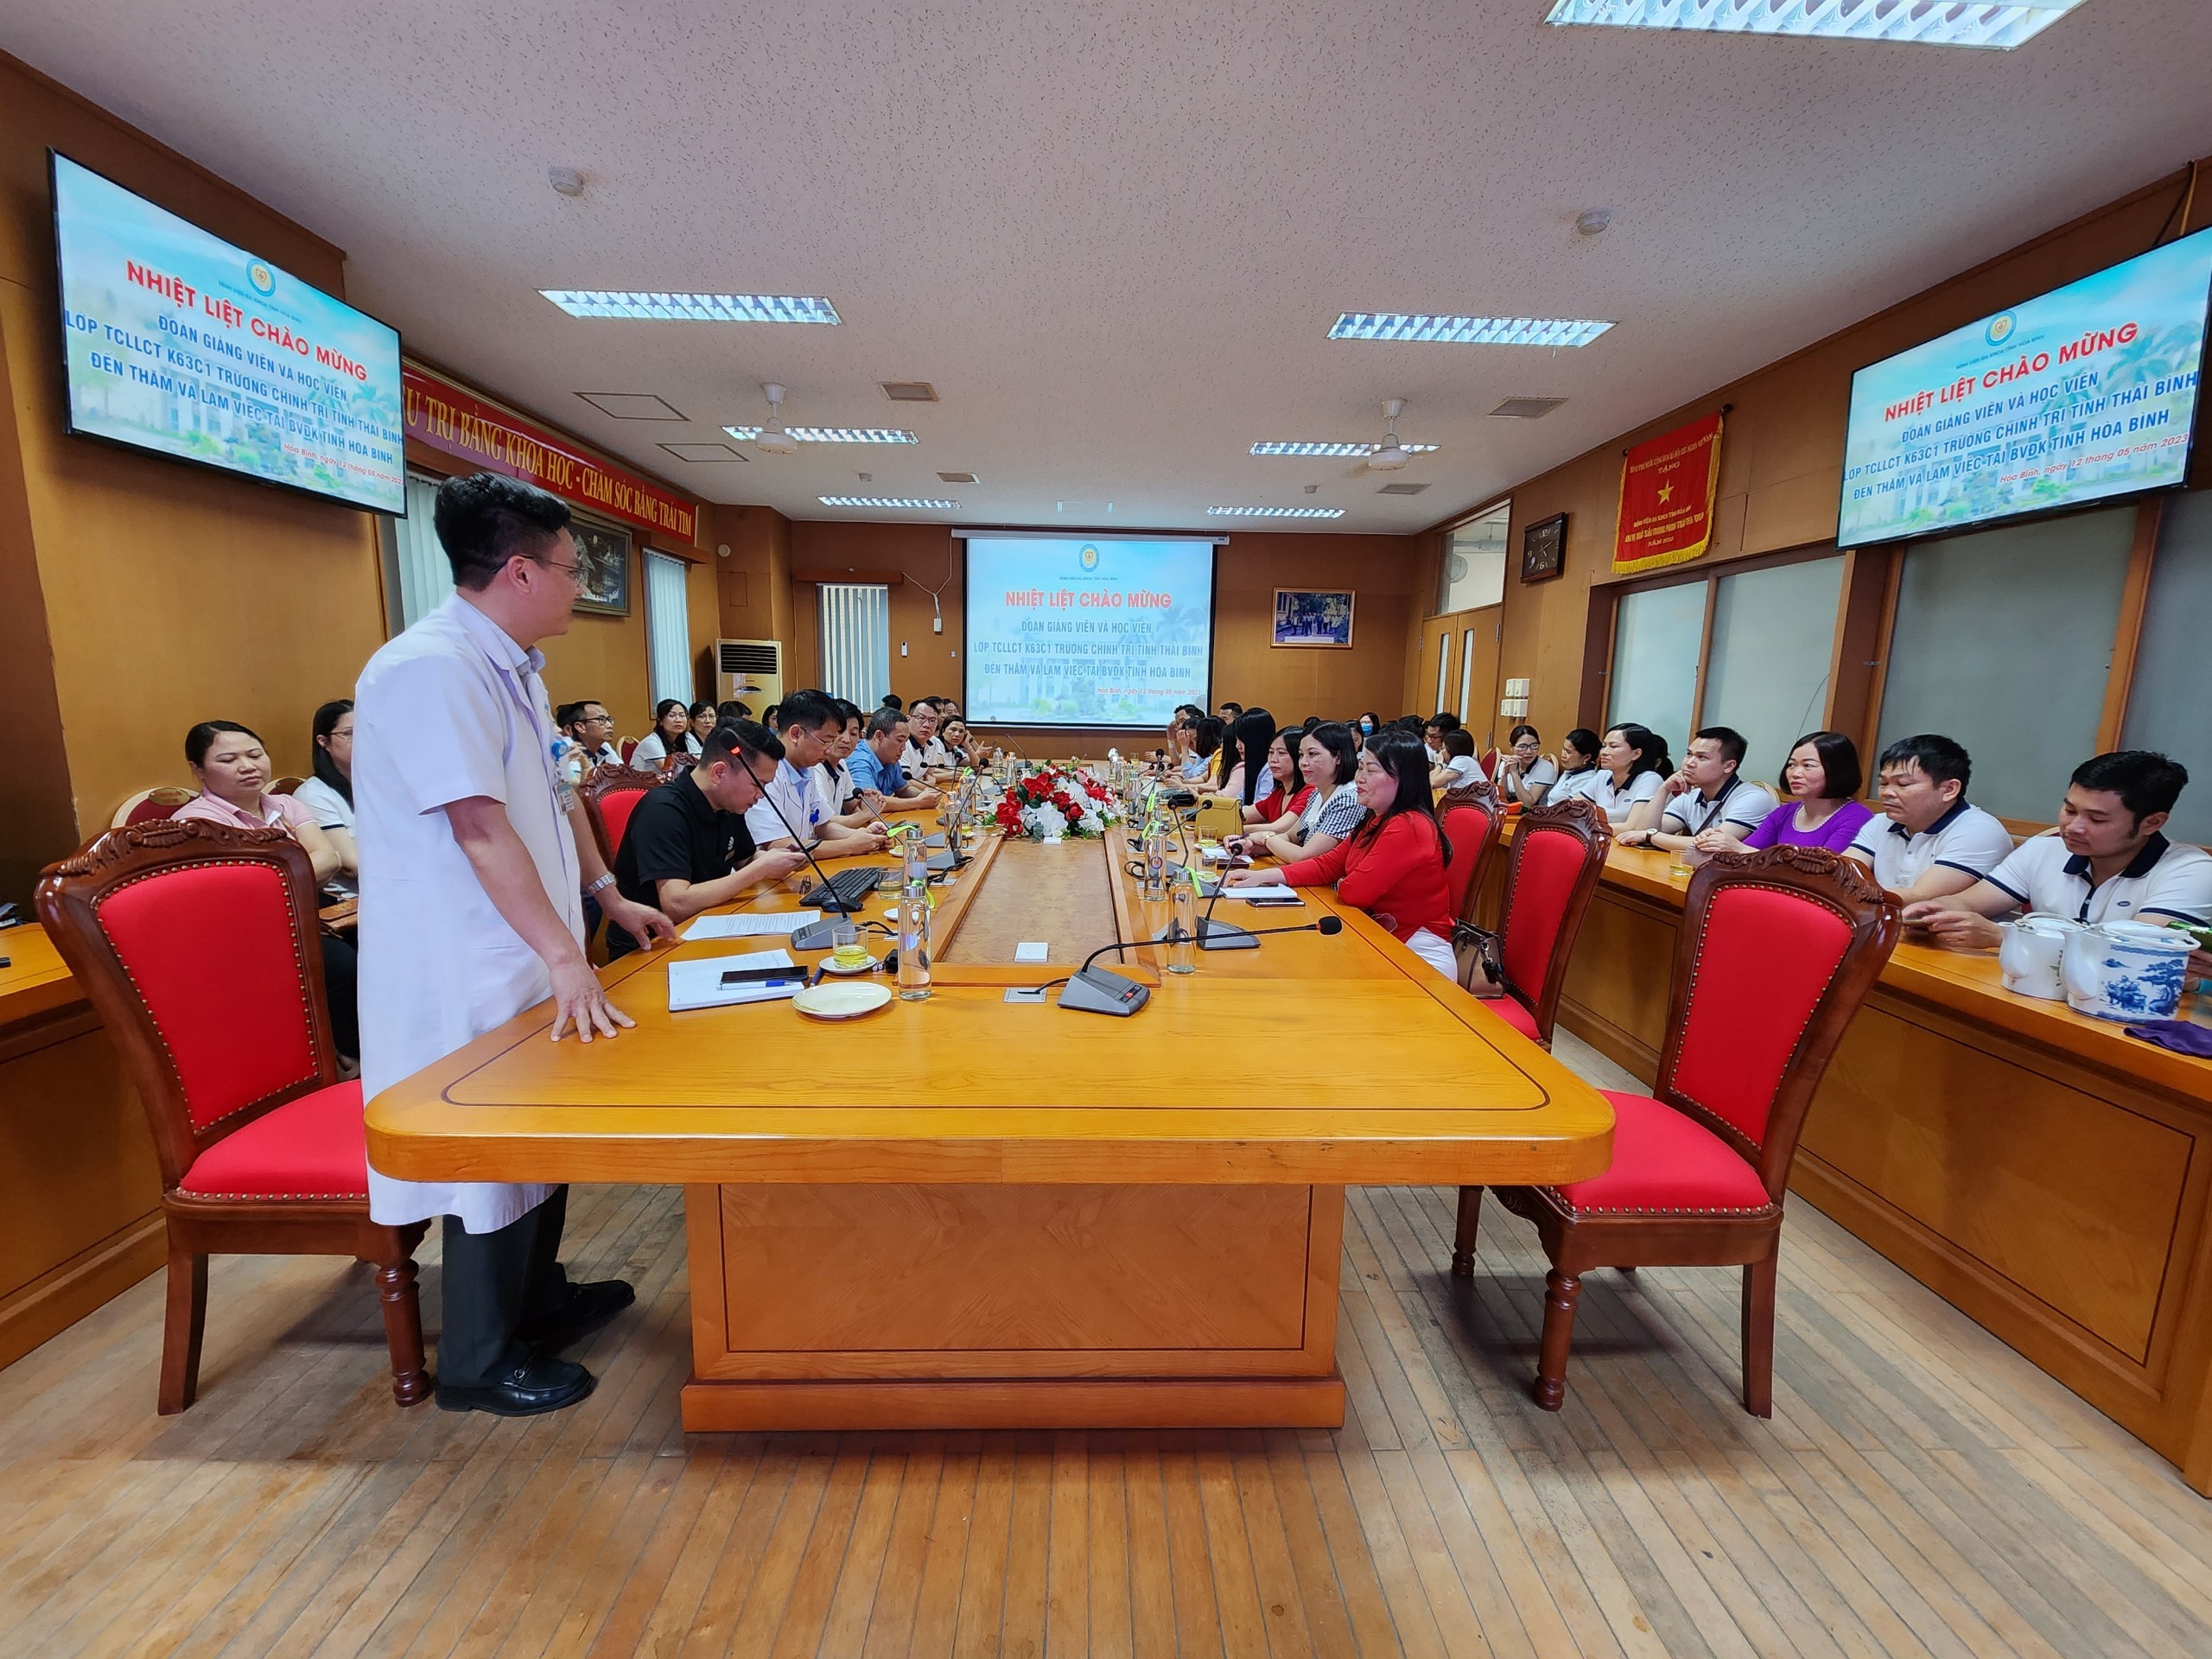  Đoàn công tác Trung cấp Lý luận chính trị K63C1 Trường Chính trị tỉnh Thái Bình tham quan và làm việc tại Bệnh viện Đa khoa tỉnh Hòa Bình